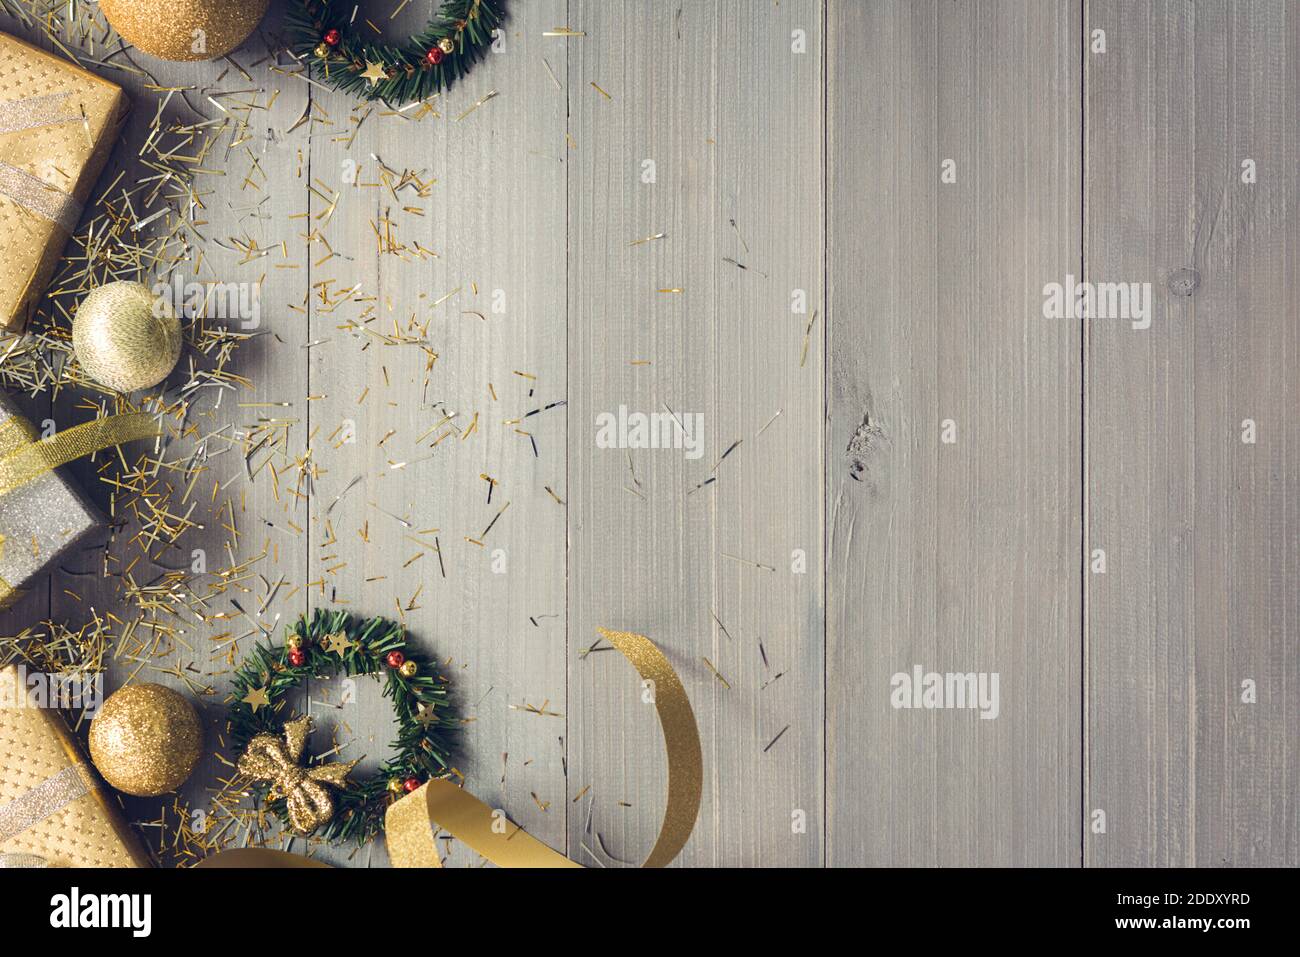 Draufsicht auf Weihnachtsgeschenkschachteln und Gold dekorieren Artikel Wie Rüschen Bänder und Mistelkränze neben Copy Platz auf Holzhintergrund Stockfoto